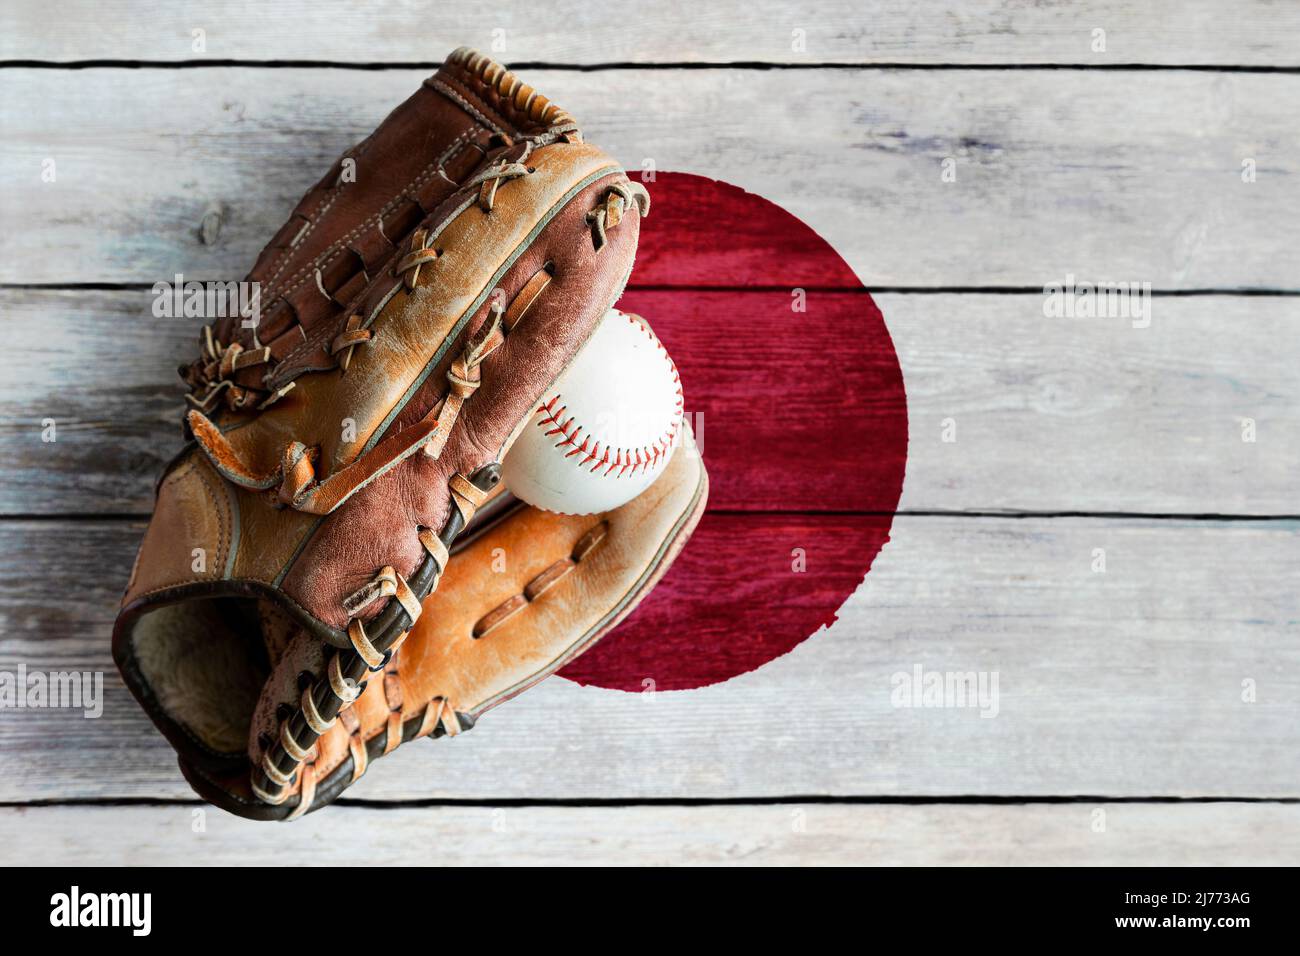 Guante de béisbol de cuero con pelota sobre fondo rústico de madera con bandera japonesa pintada y espacio de copia. Japón es una de las mejores natio de béisbol del mundo Foto de stock